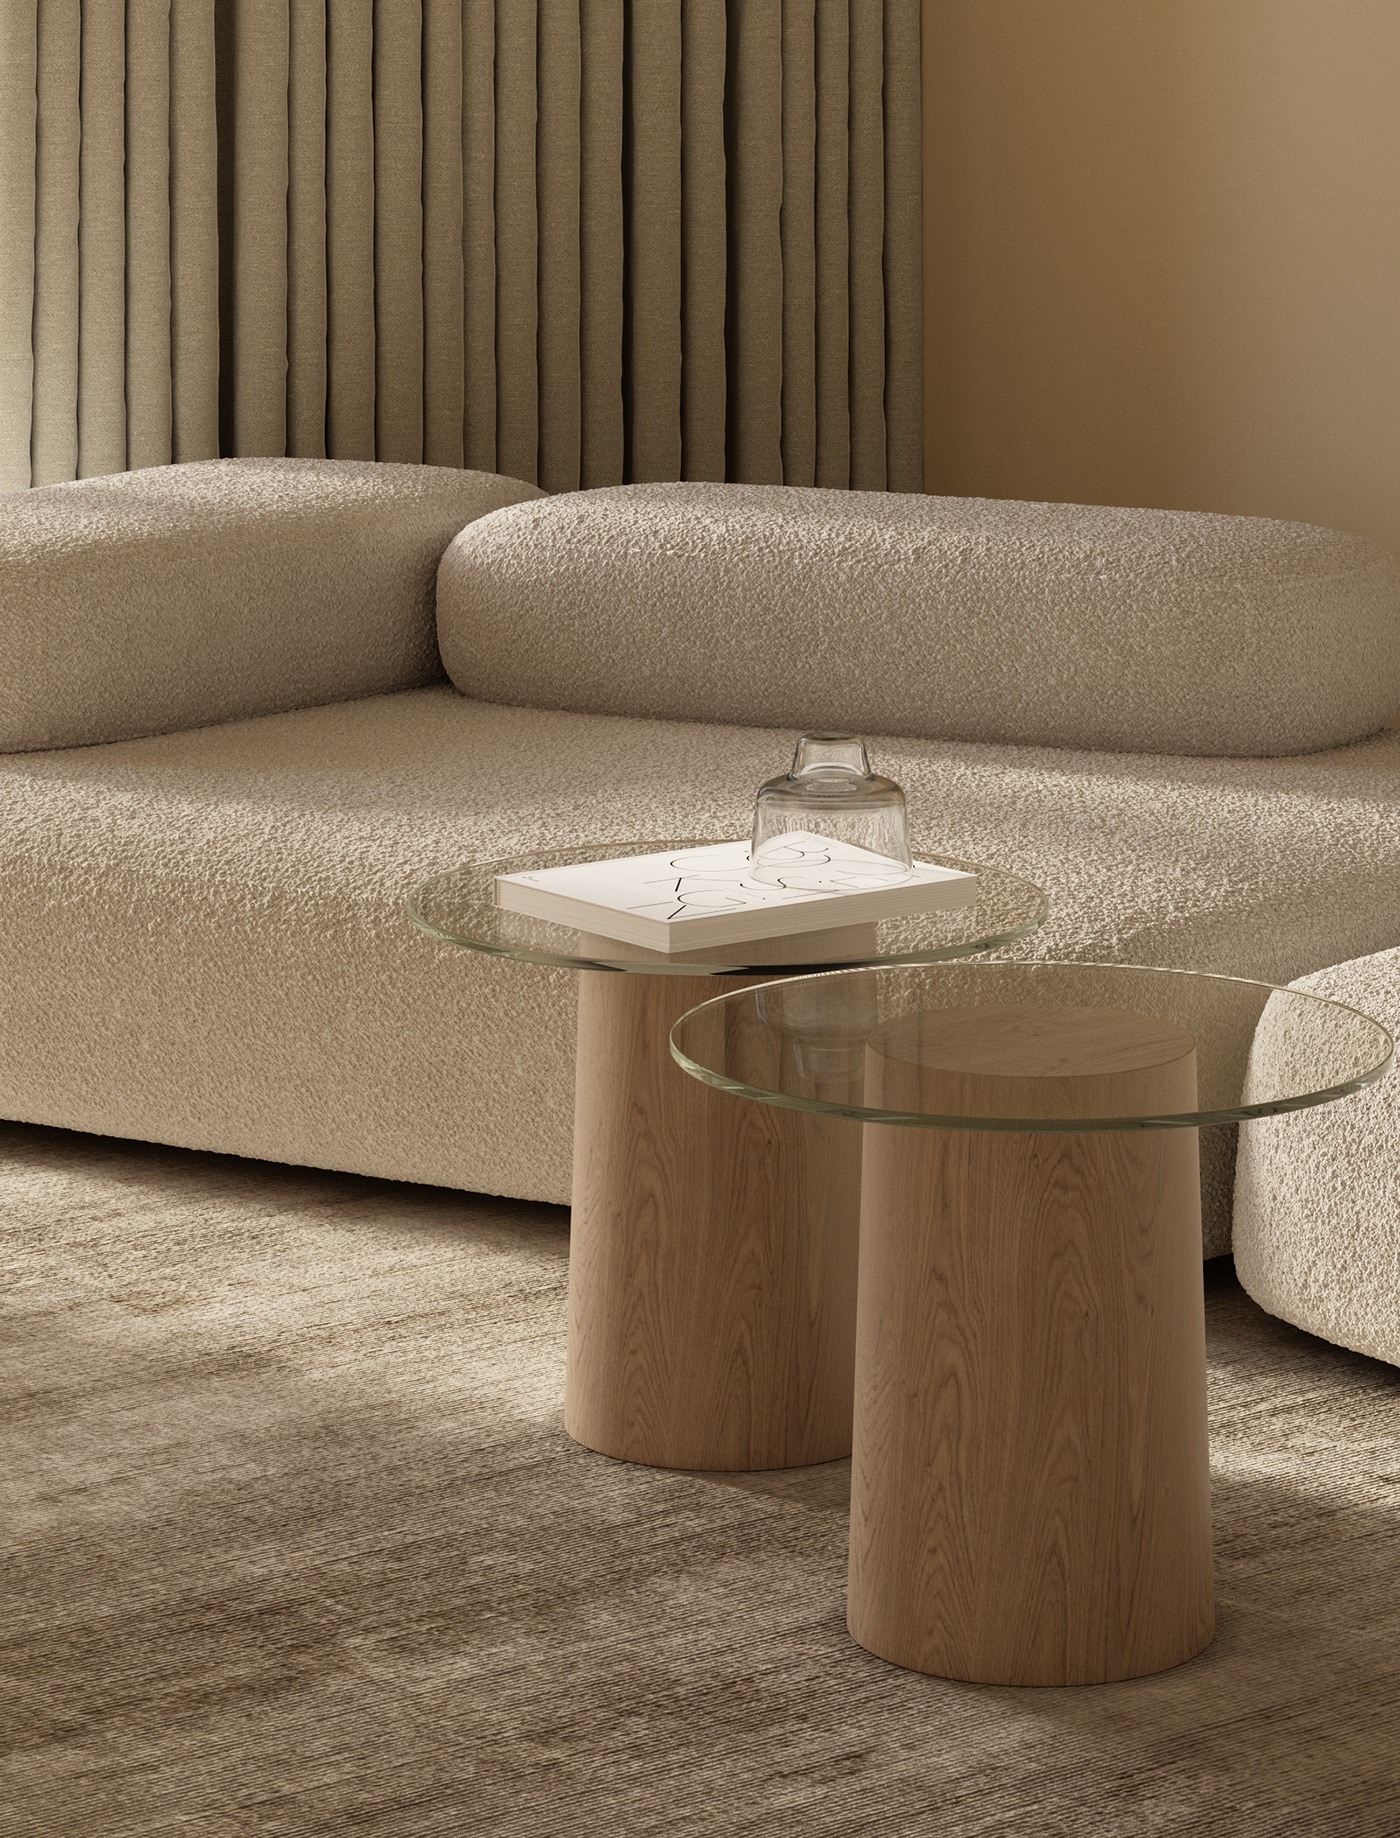 modern interior design  visualization 3ds max architecture corona Render living room future futuristic